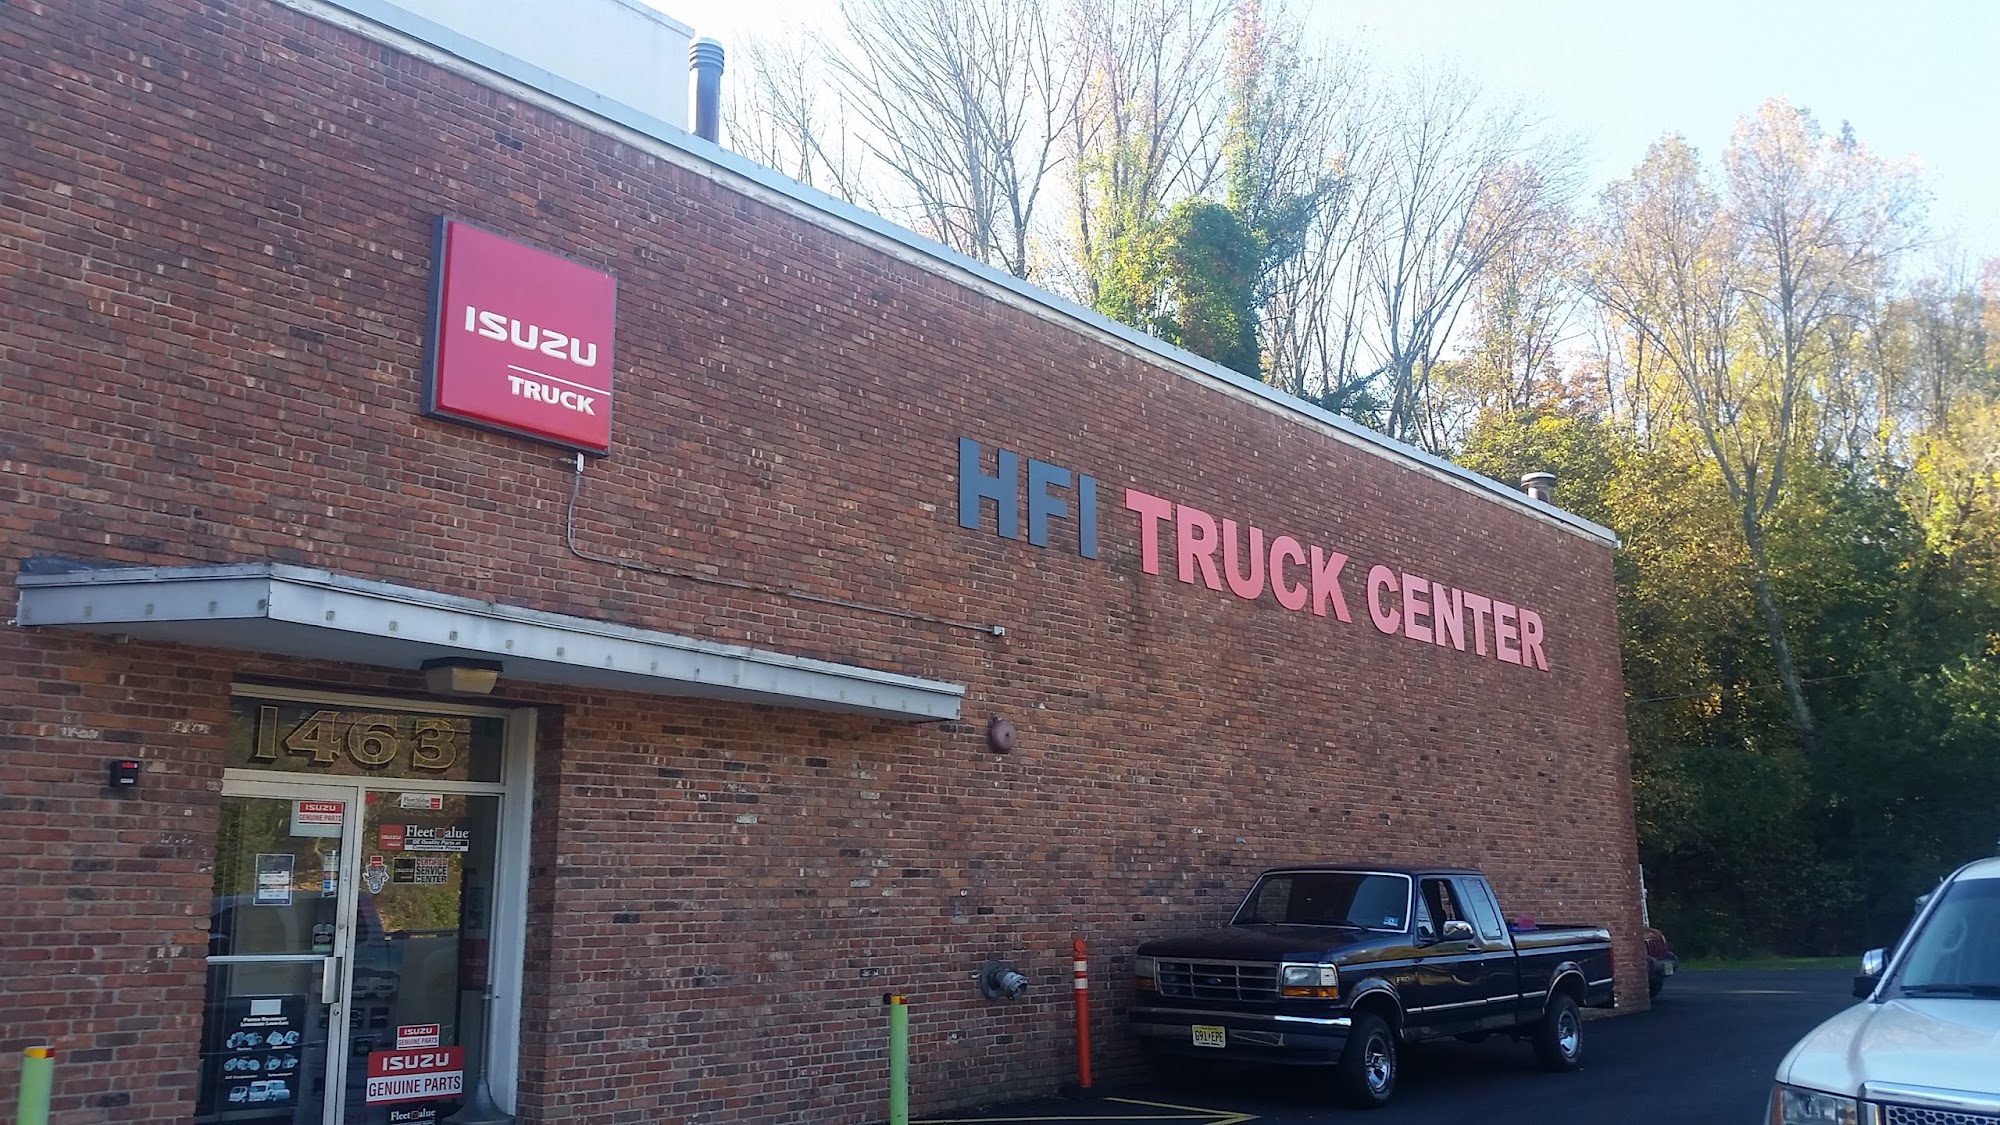 HFI Truck Center